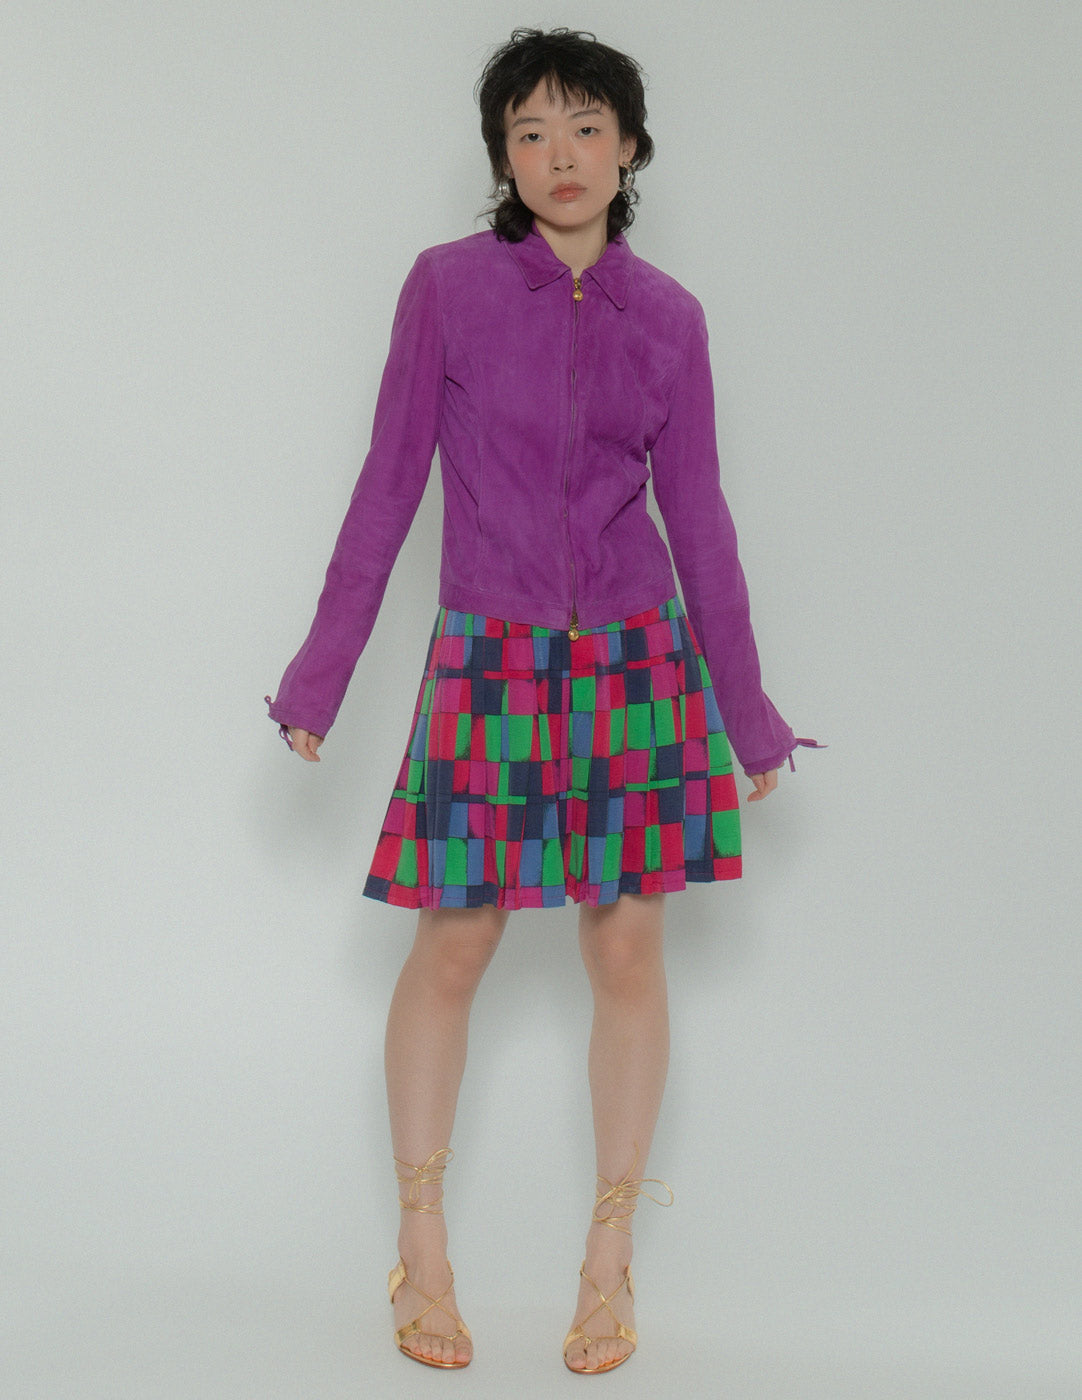 Versus vintage multi-colored pleated skirt